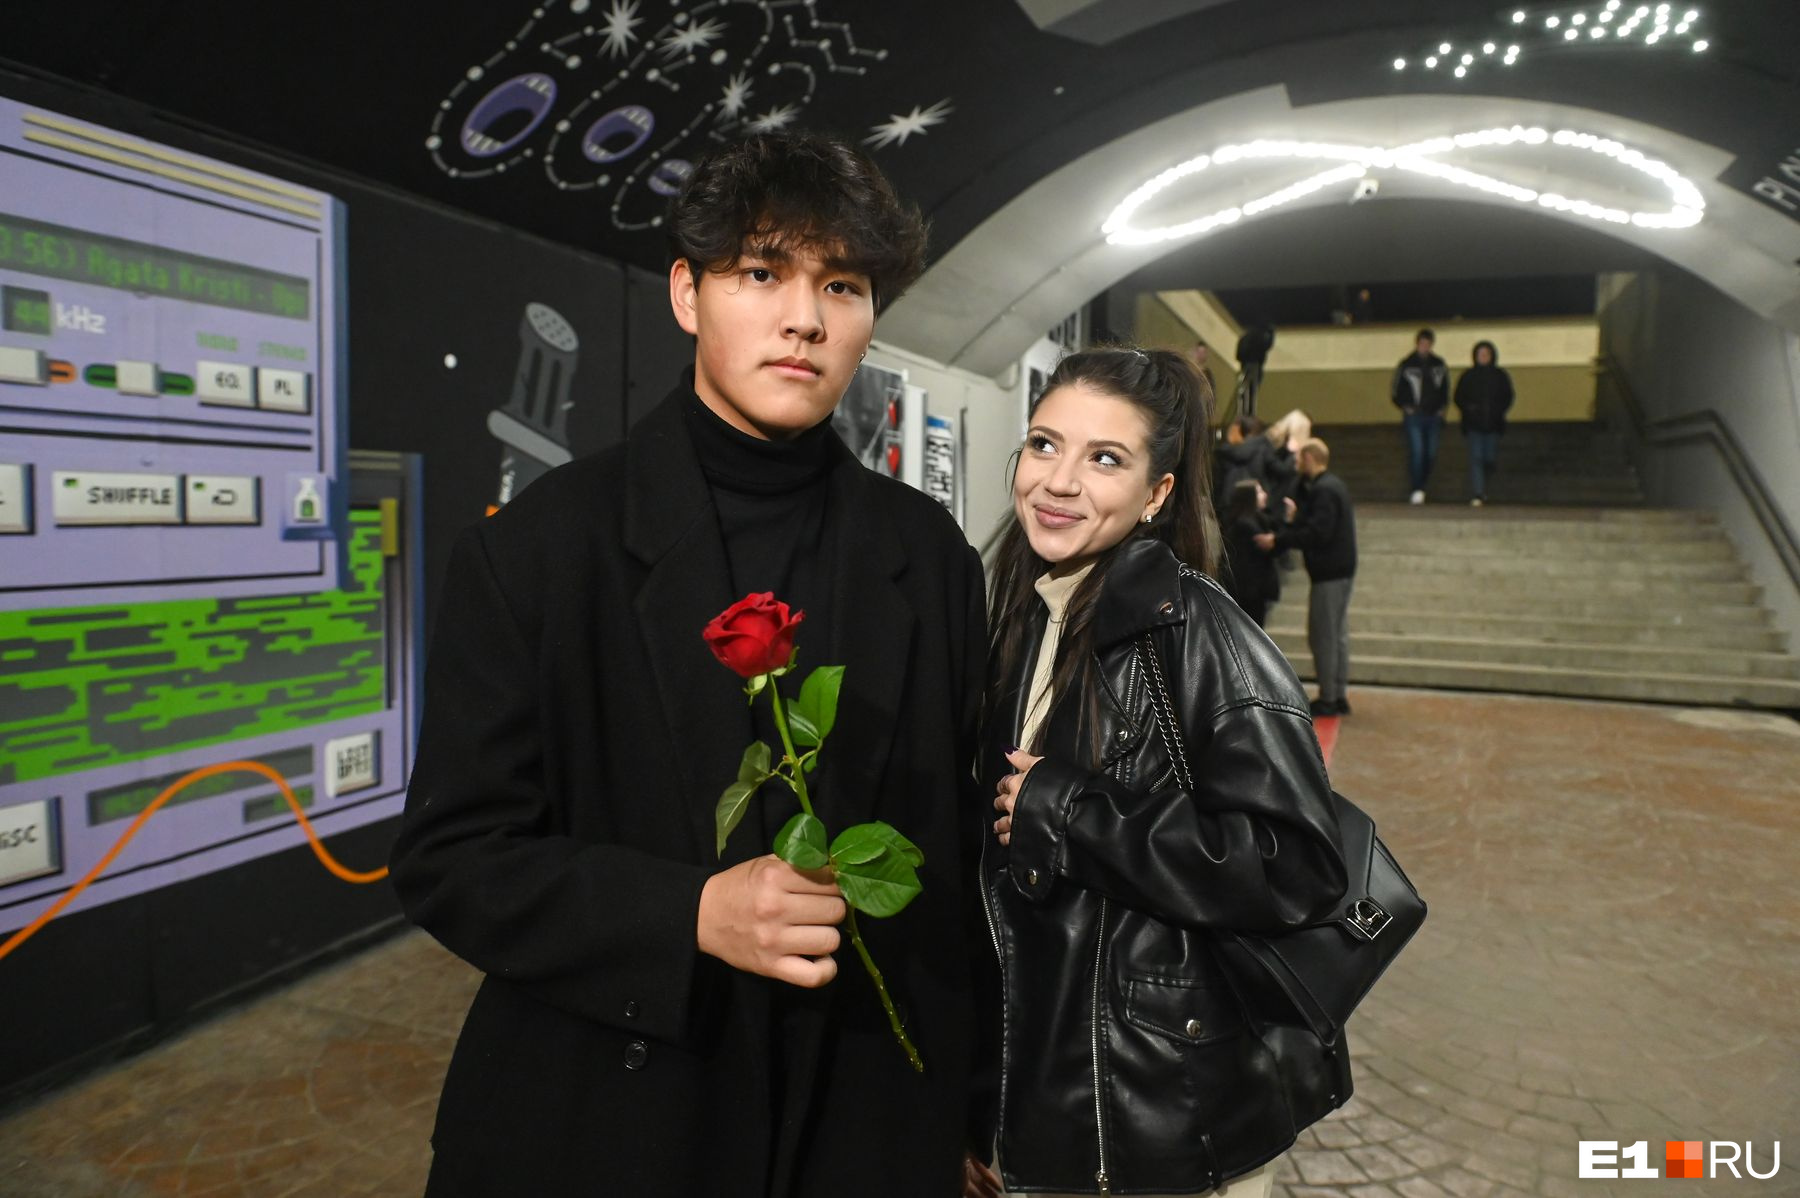 В центре Екатеринбурга красотки с цветами подходили к незнакомцам: что это было